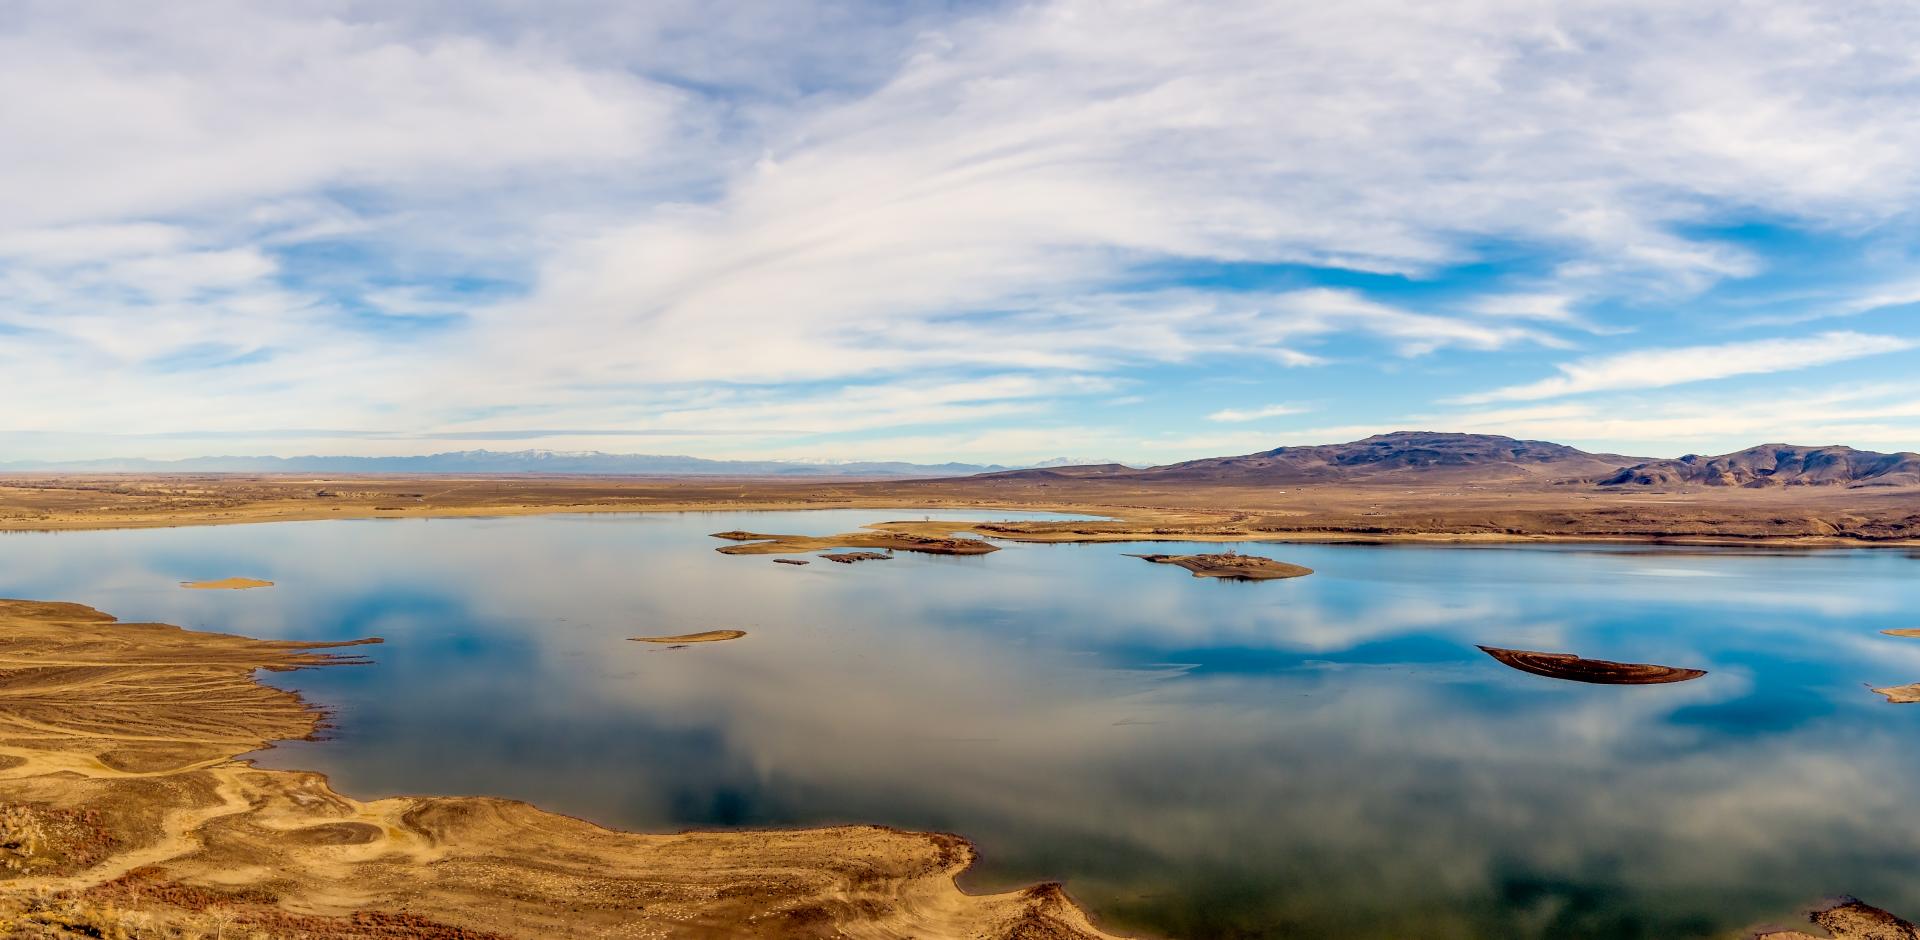 Image of lake in Silver Springs, Nevada